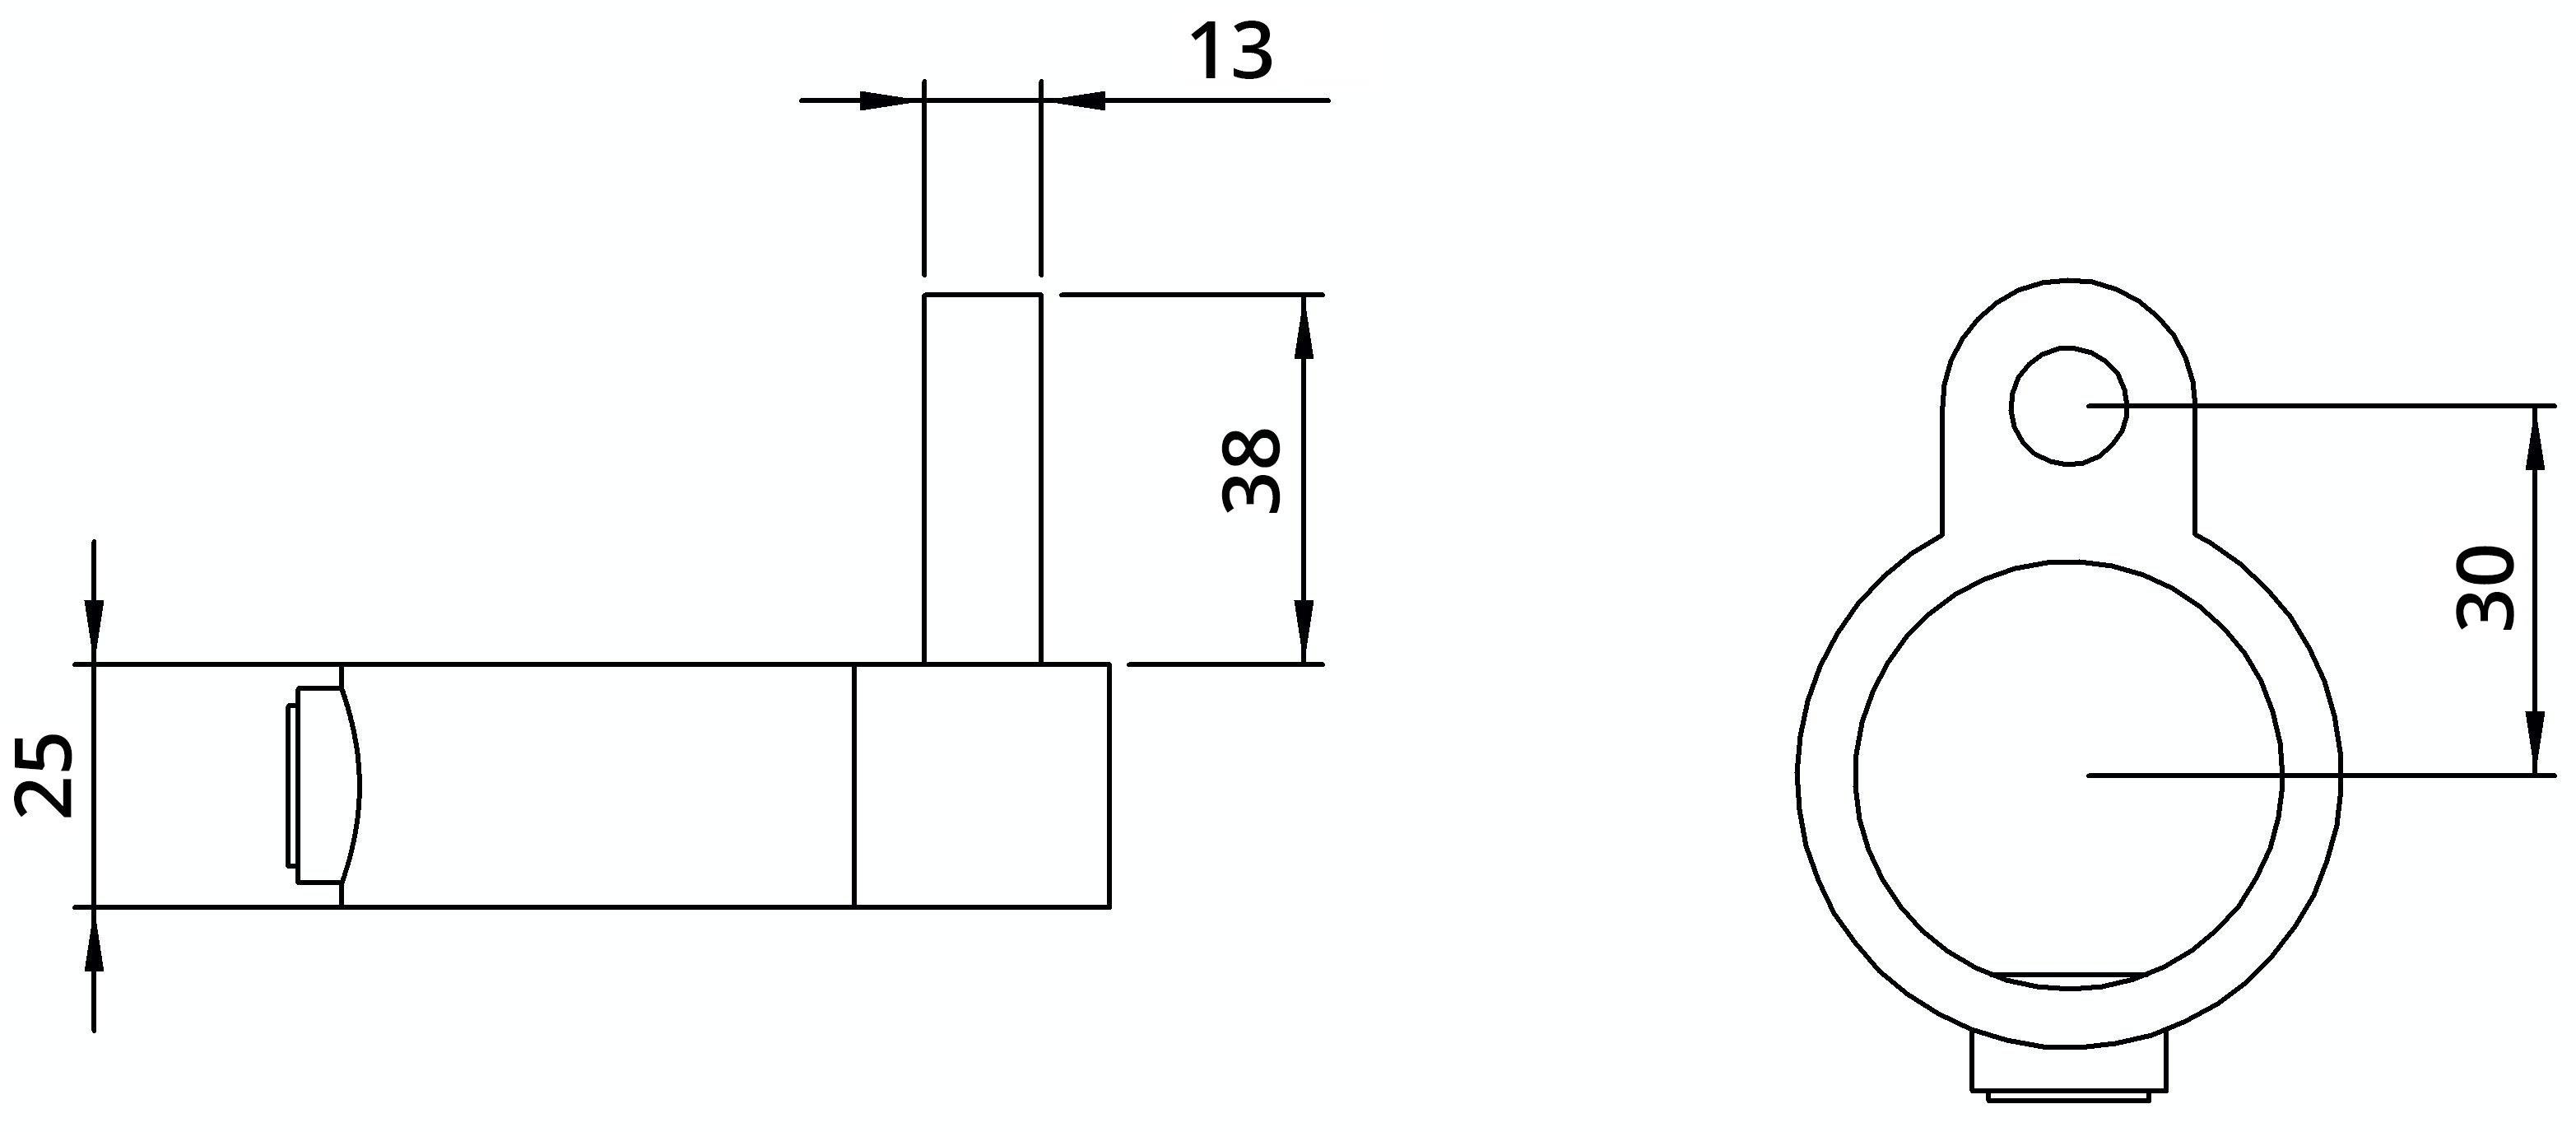 Rohrverbinder | Stellringzapfen | 140A27 | 26,9 mm | 3/4" | Feuerverzinkt u. Elektrogalvanisiert